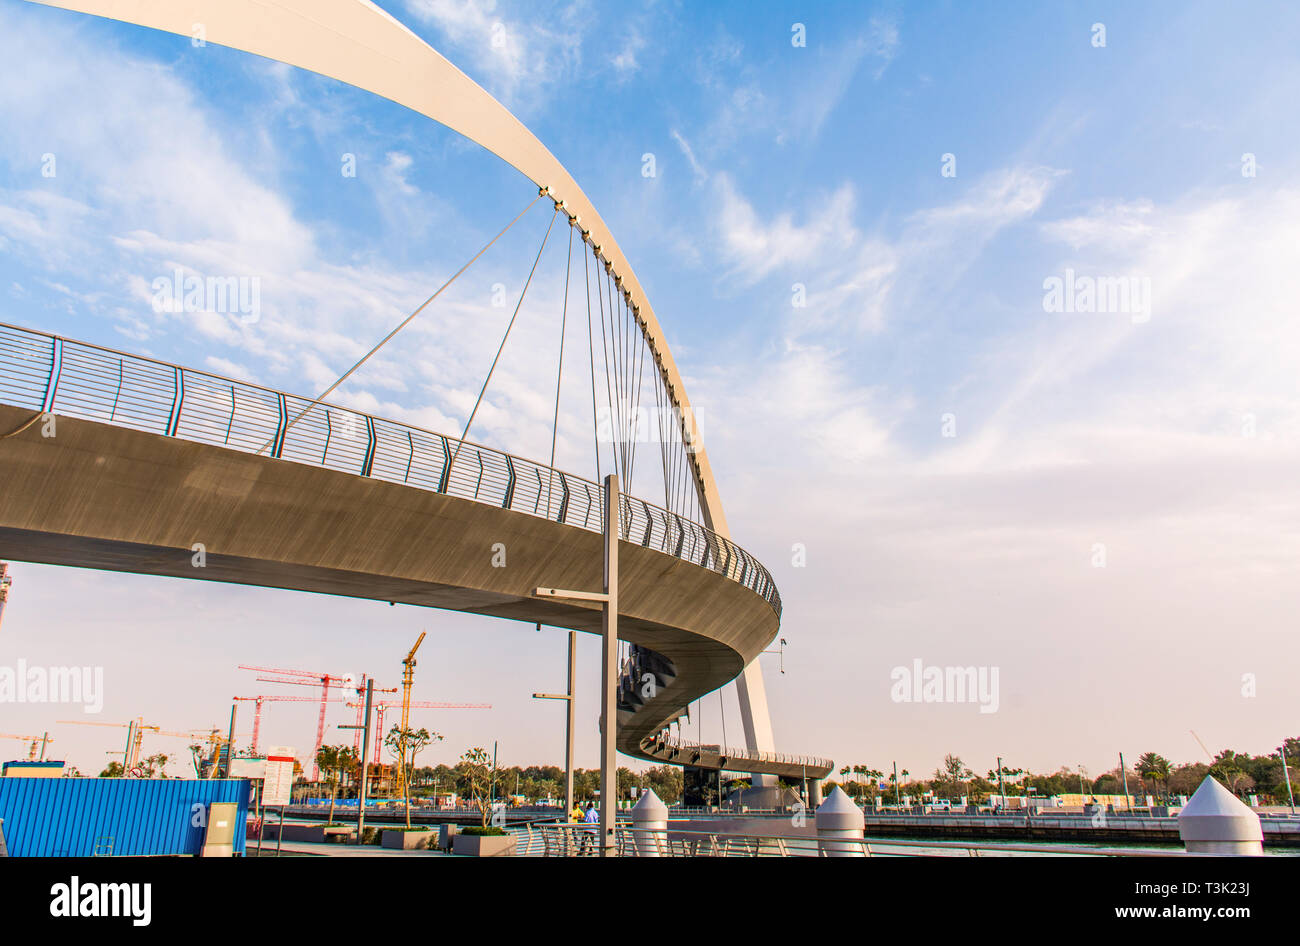 L'eau de Dubaï Tolérance Canal Bridge nouvelle attraction de la ville de Dubaï, l'endroit à visiter dans U.A.E, lieu touristique, destination, de l'architecture moderne Banque D'Images